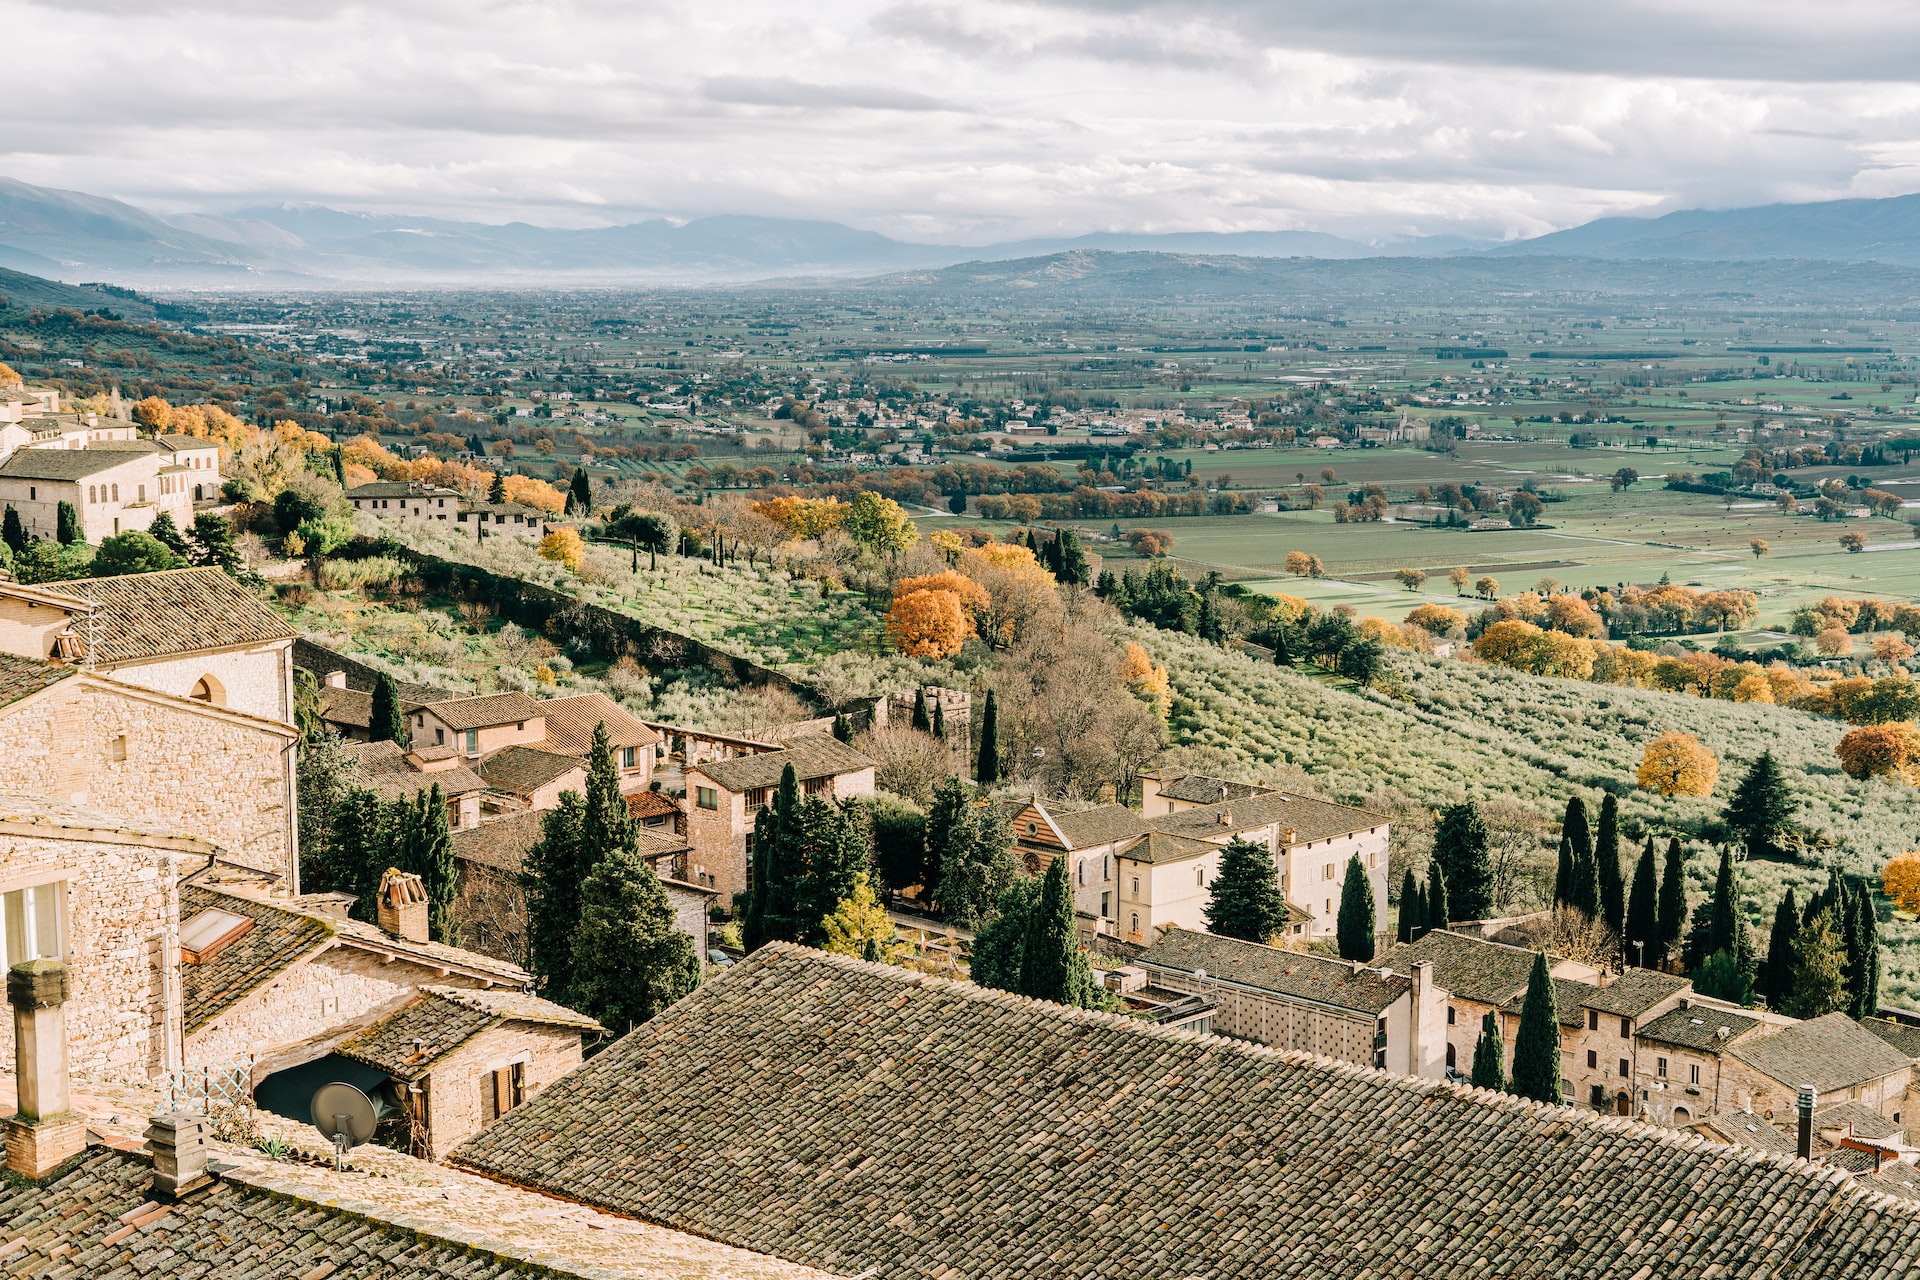 Perugia in Umbria, Italy